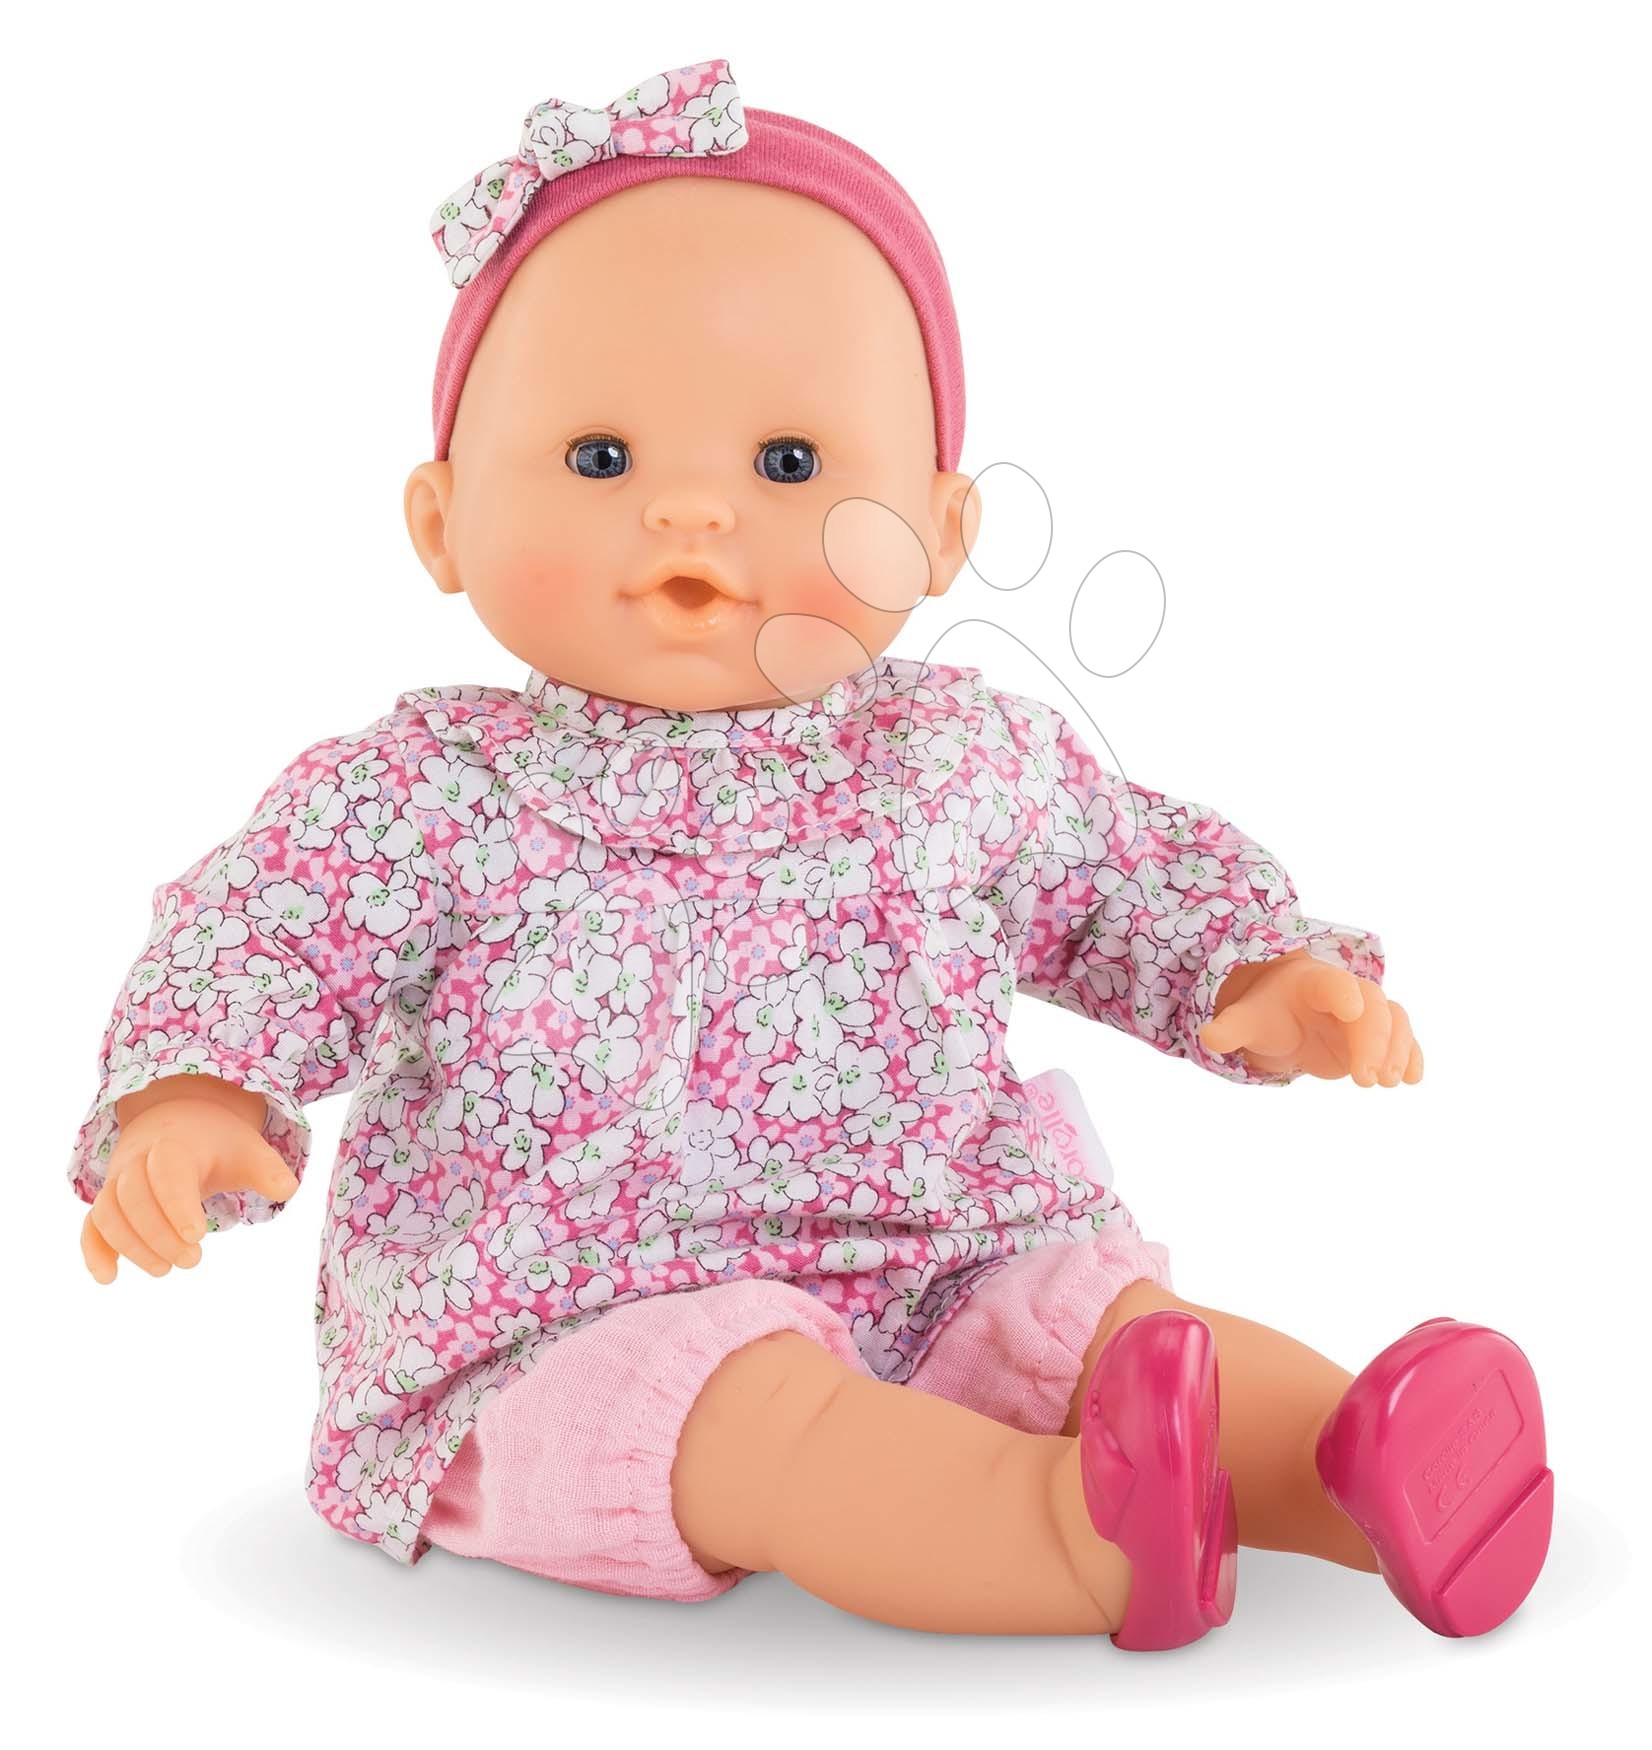 Puppen ab 24 Monaten - Puppe Louise Mon Grand Poupon Corolle mit blauen Augen 36 cm ab 24 Monaten